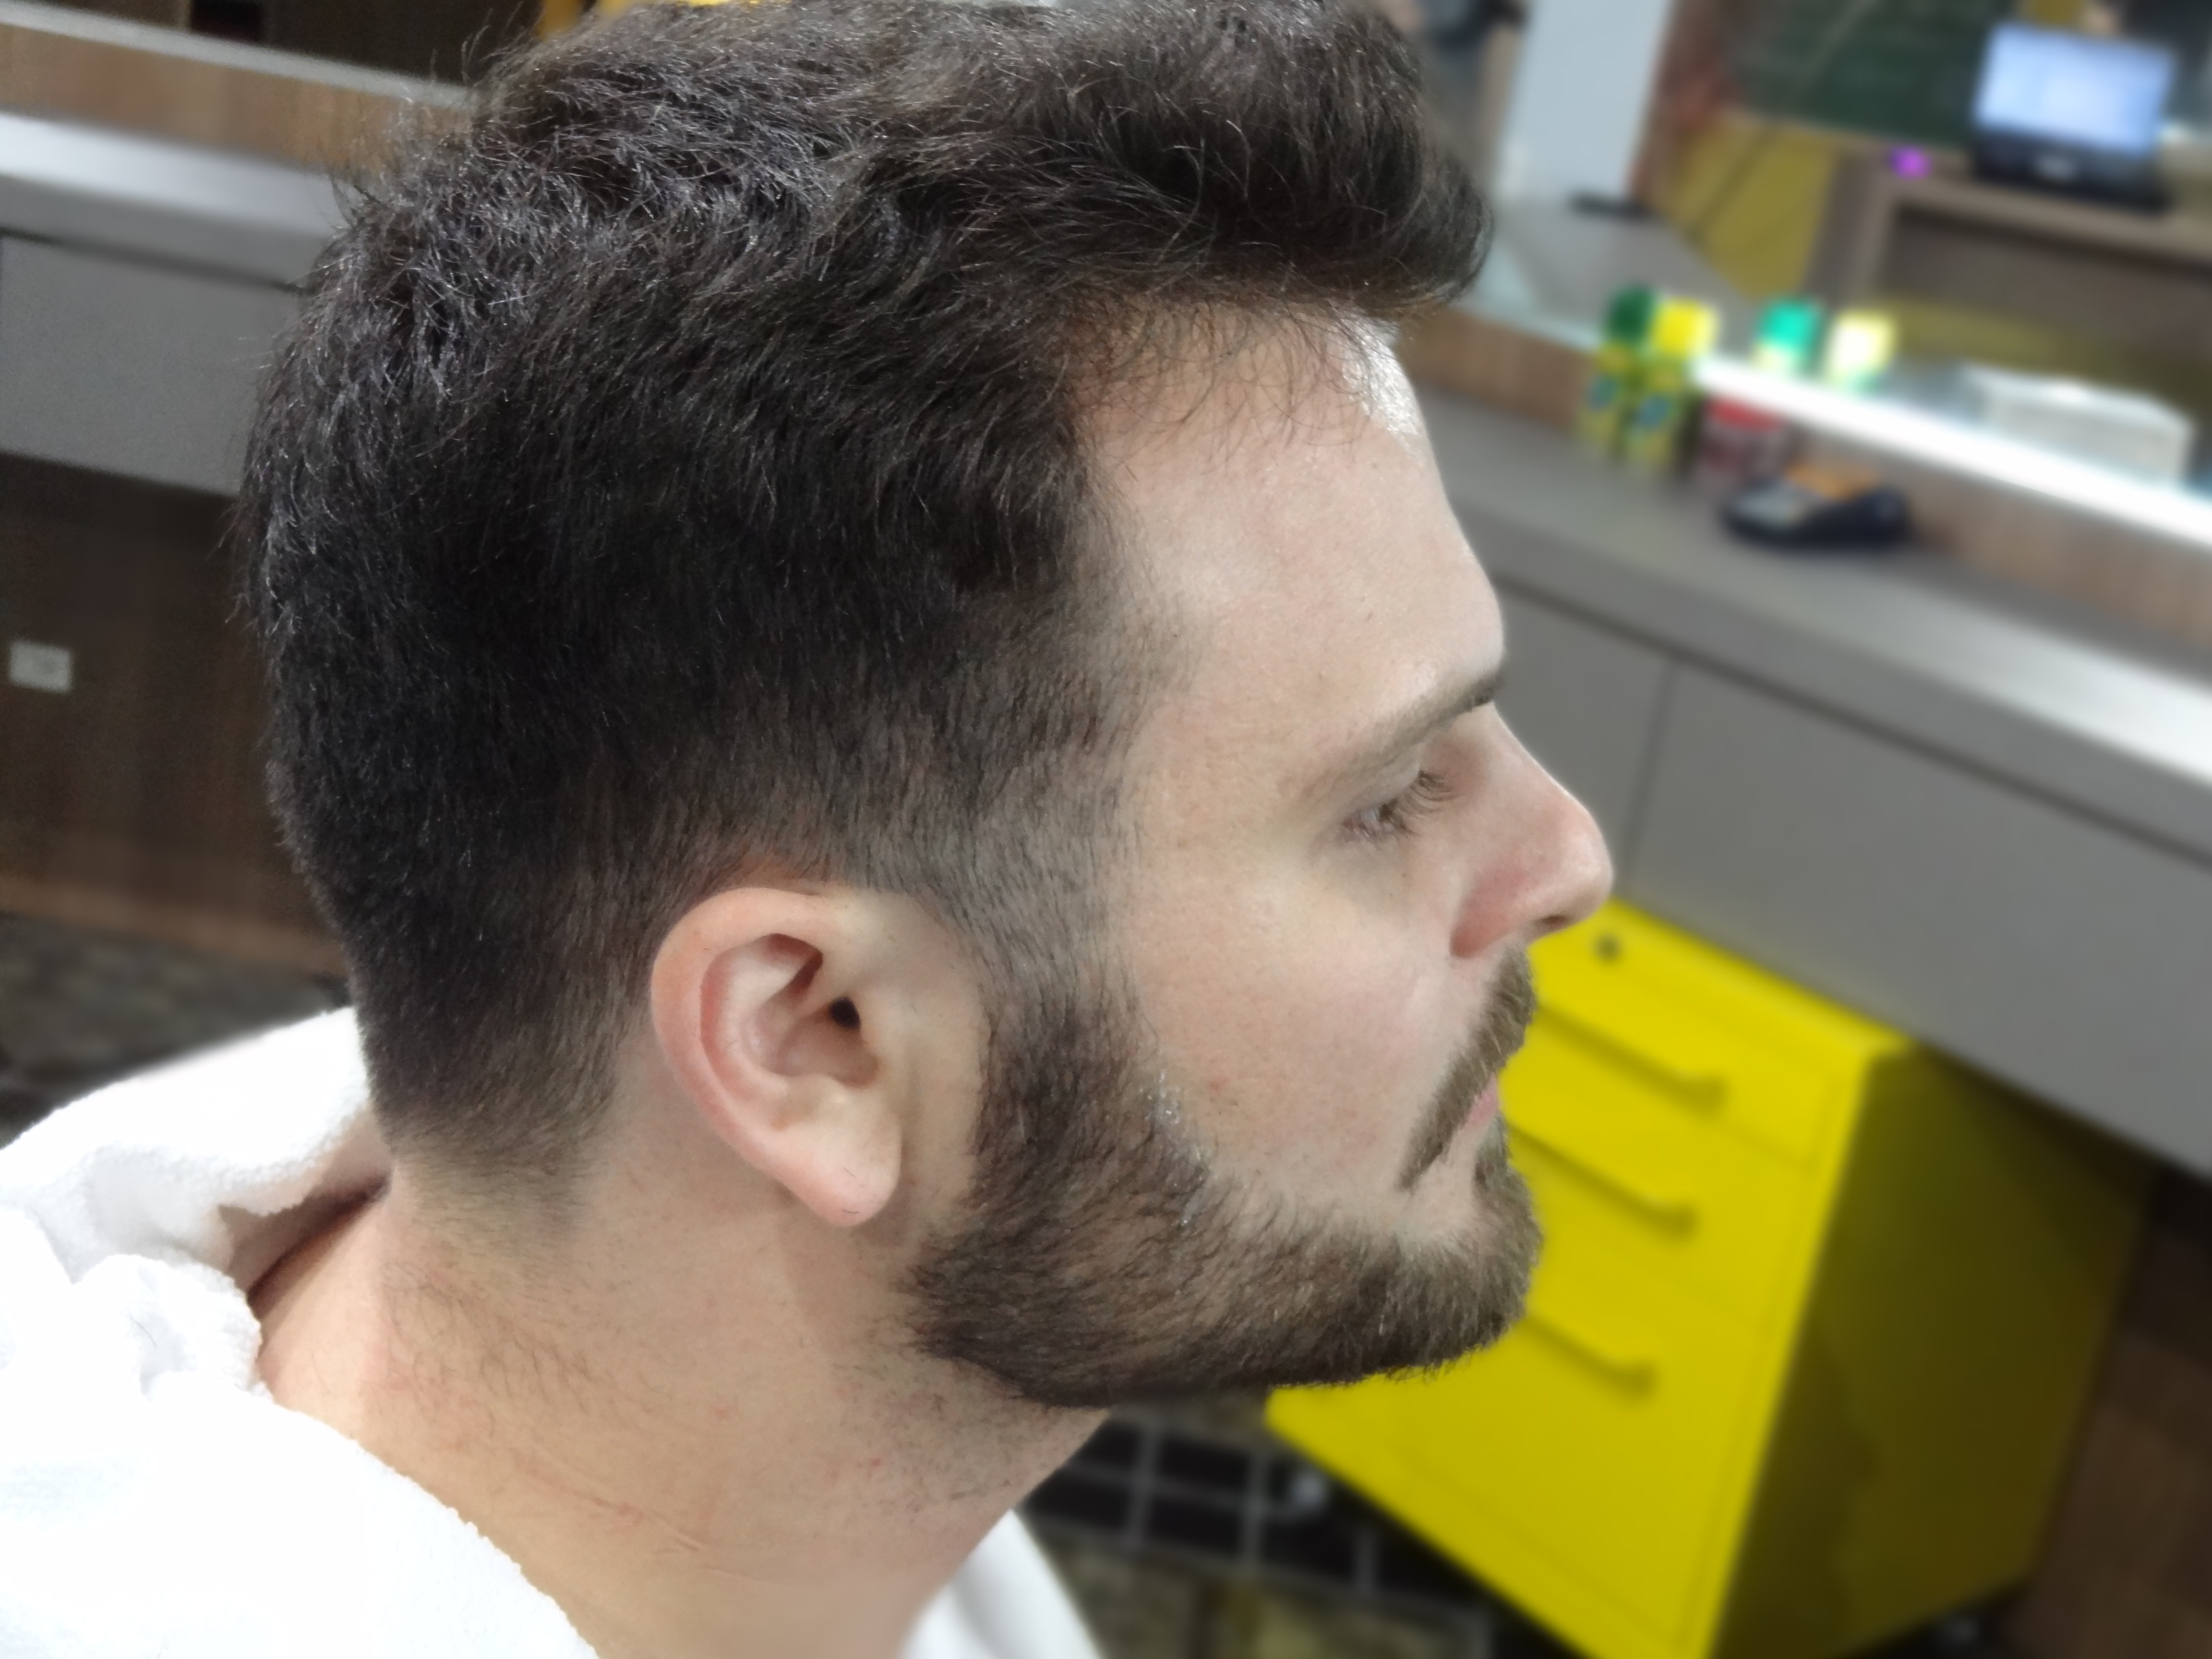 Felipe Pian, cuidado da barba no Barbeiro.